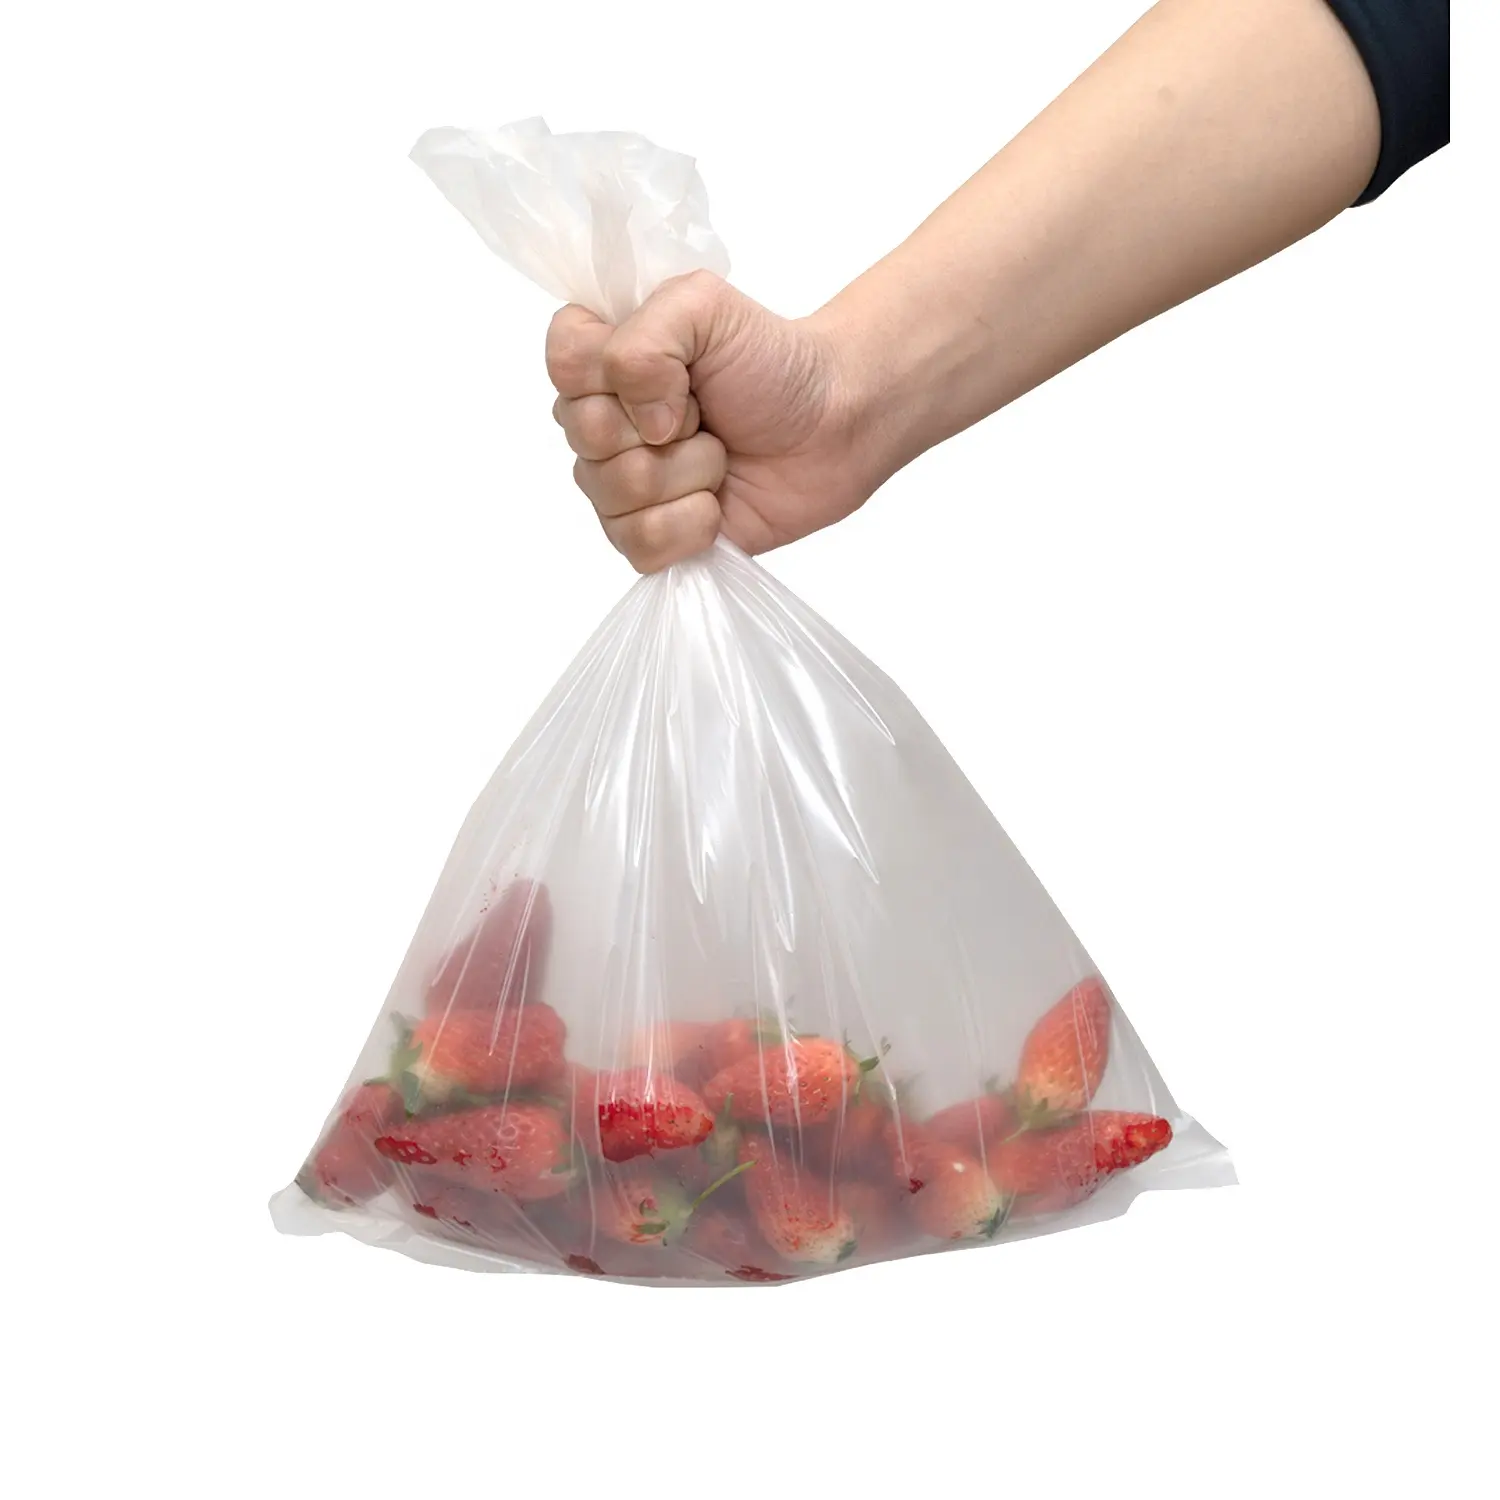 Saco de produtos biodegradáveis compostáveis de boa qualidade (saco de legumes/saco de frutas) - preço baixo, colheita de Shandong